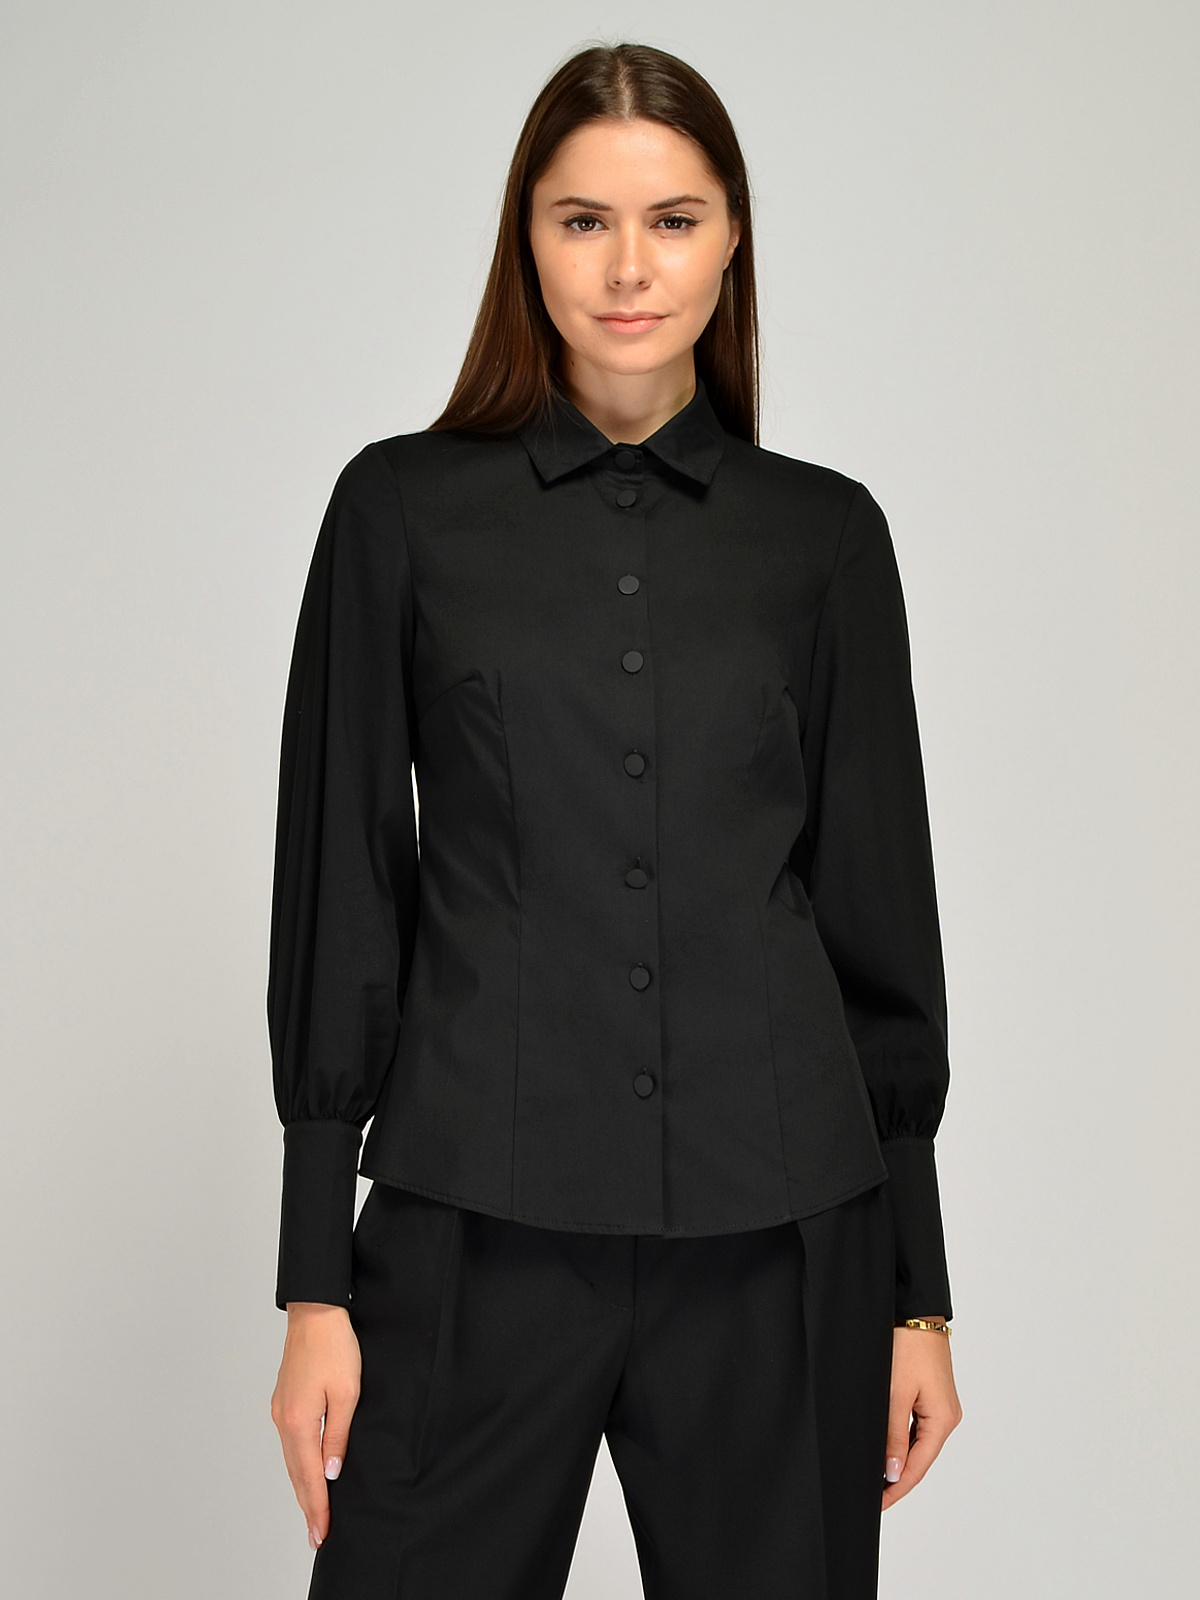 Блуза женская Каляев 66837 черная 56 RU